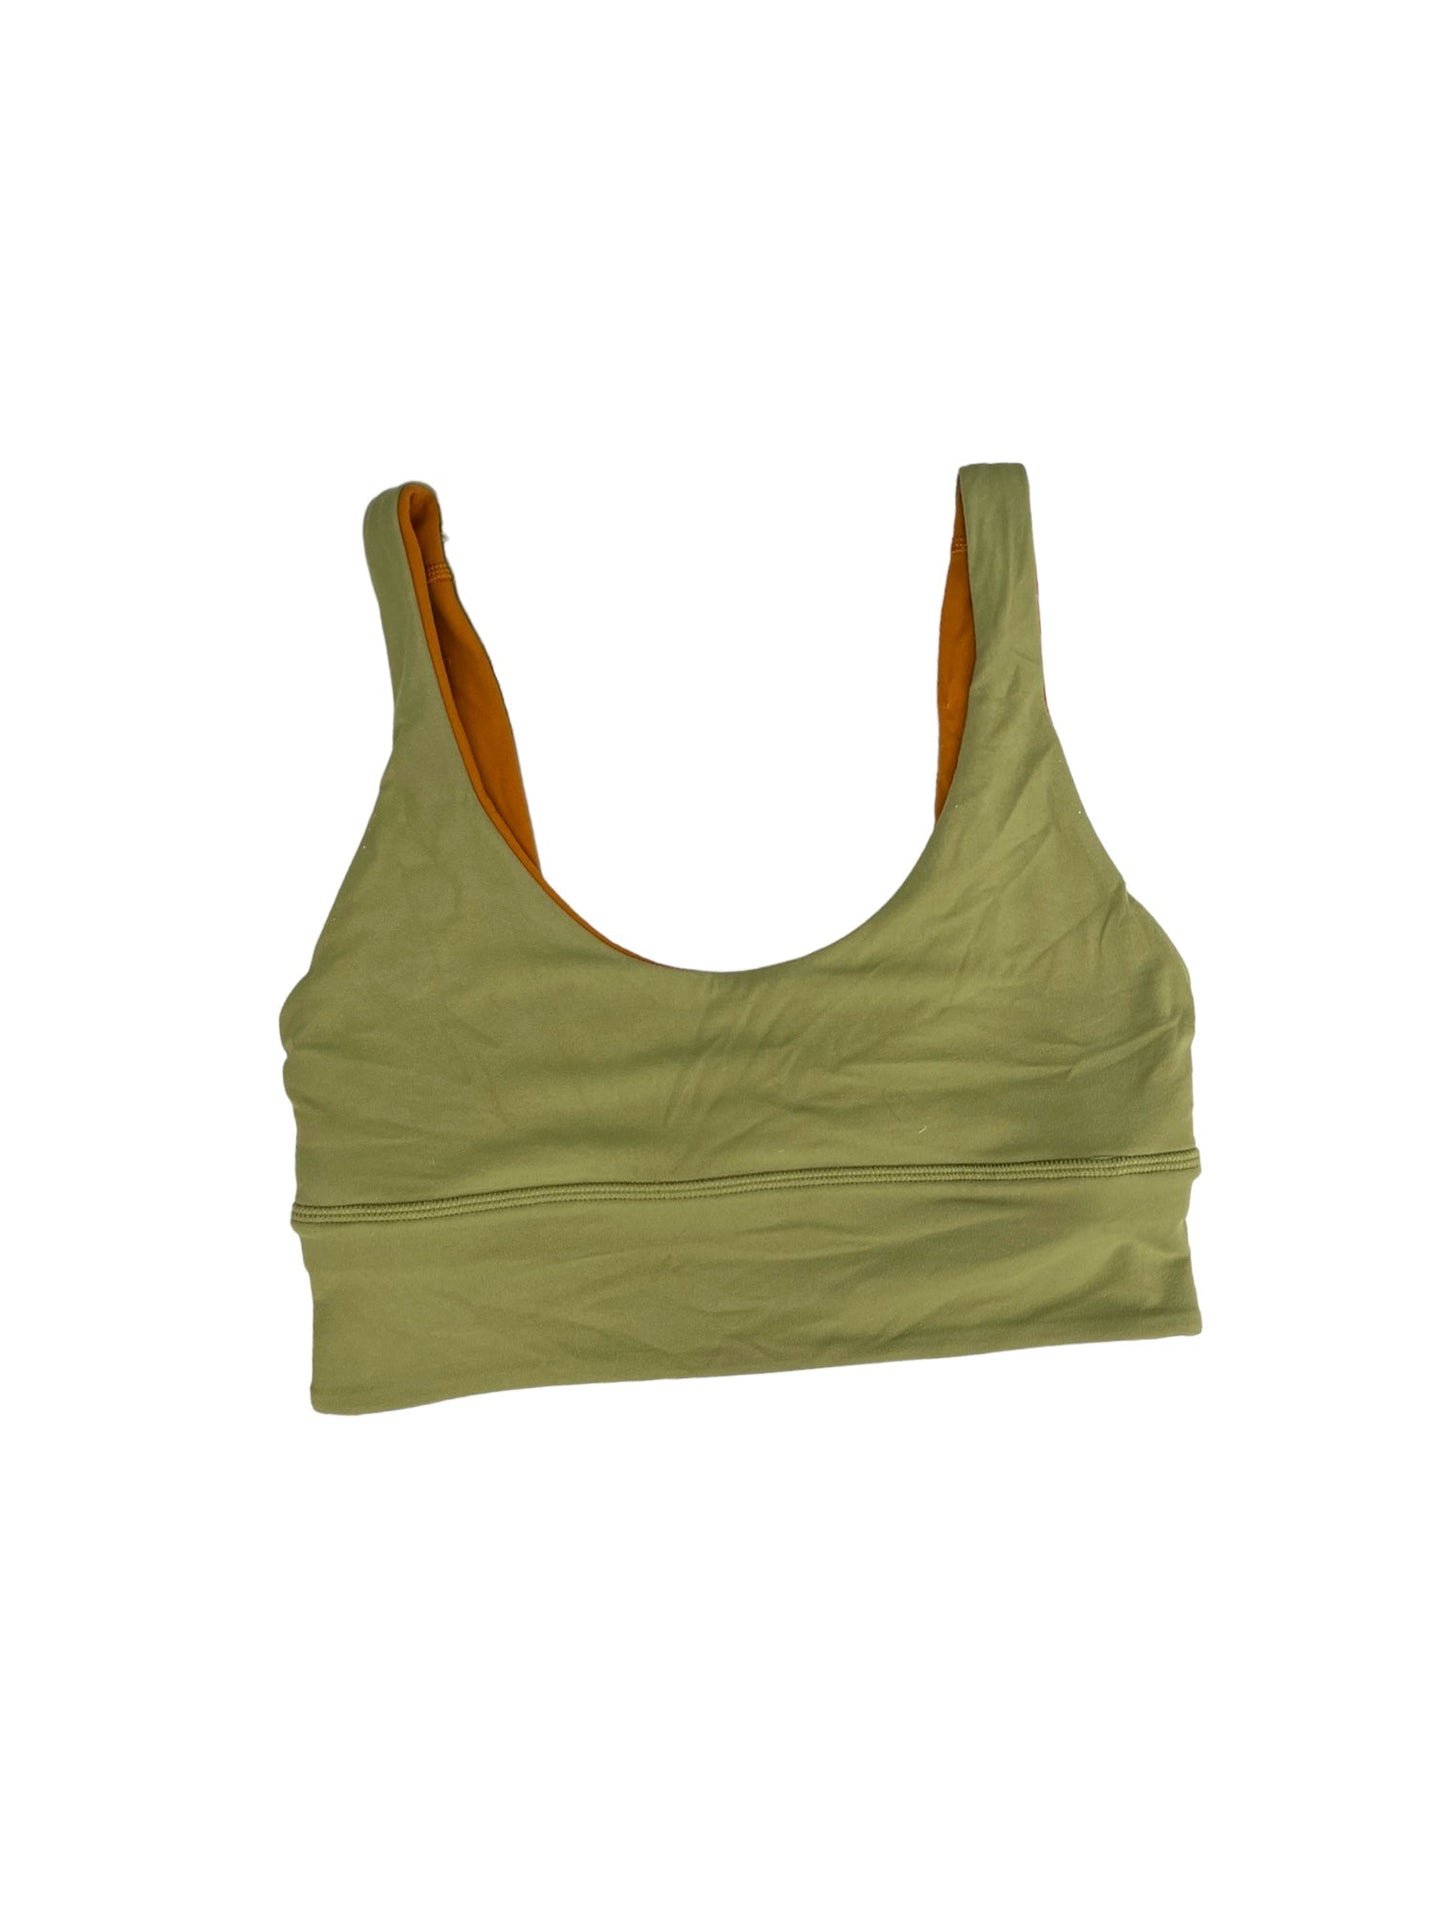 Green & Orange Athletic Bra Lululemon, Size 4